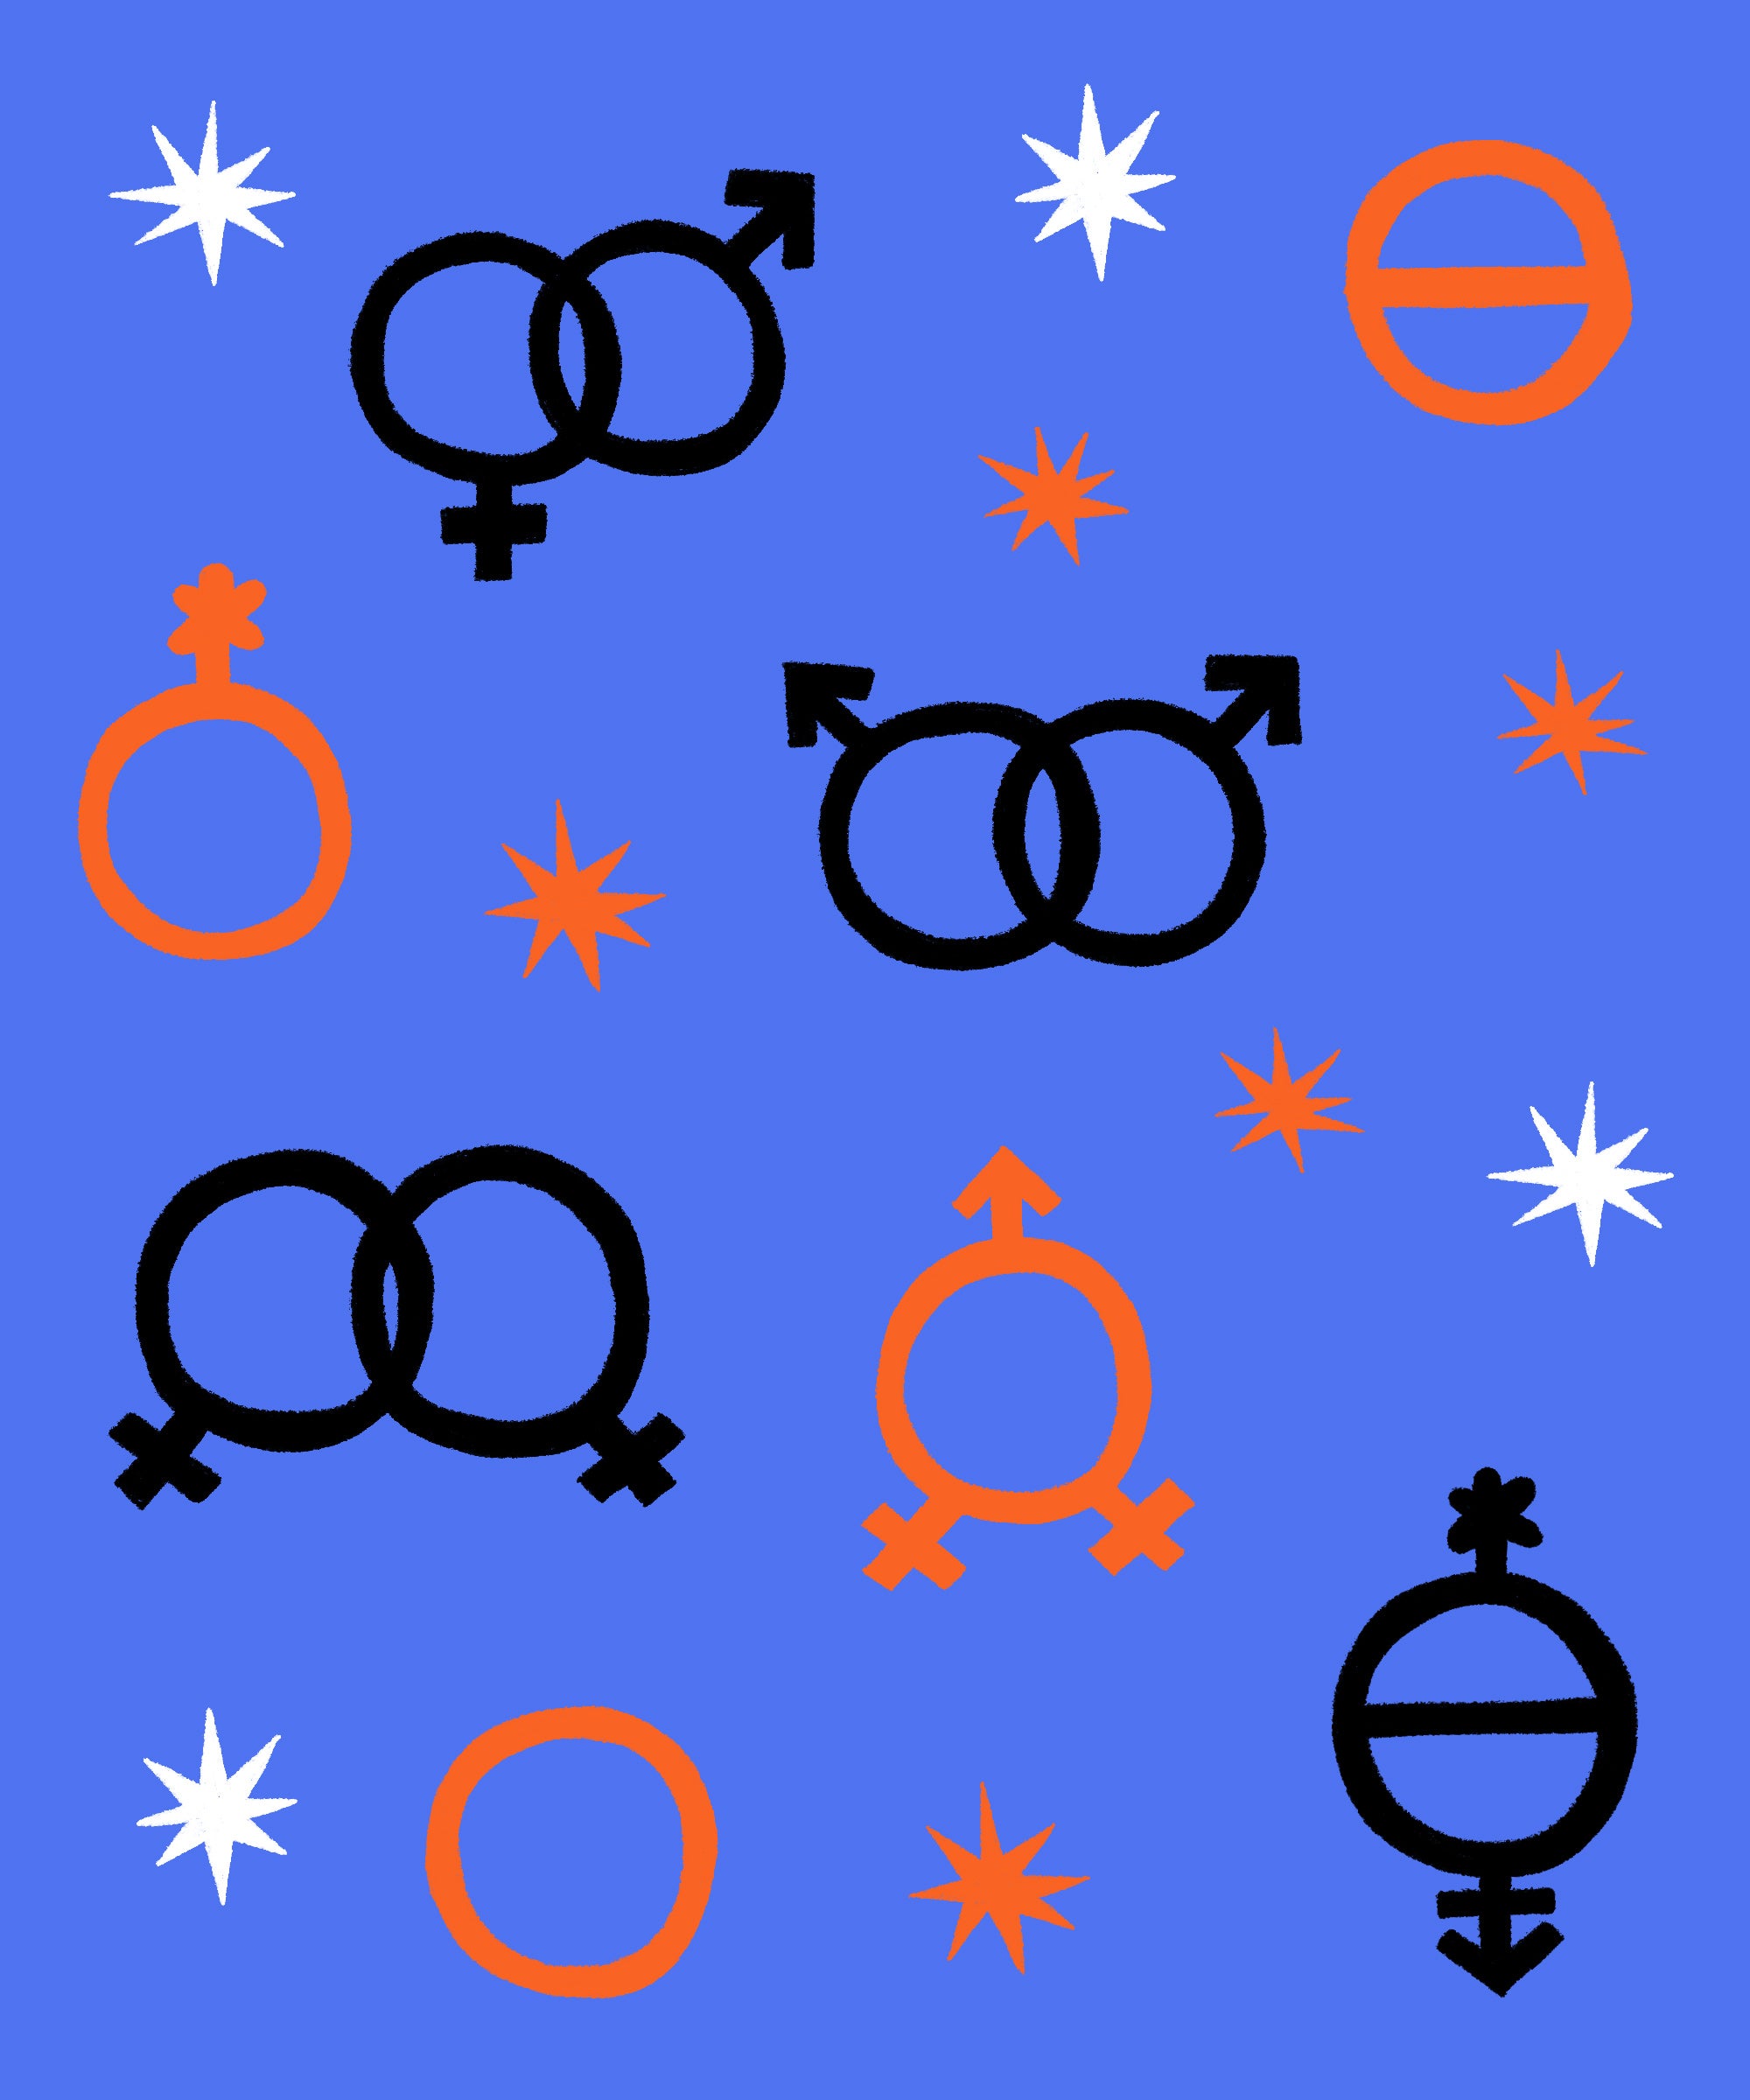 queer as folk zodiac signs